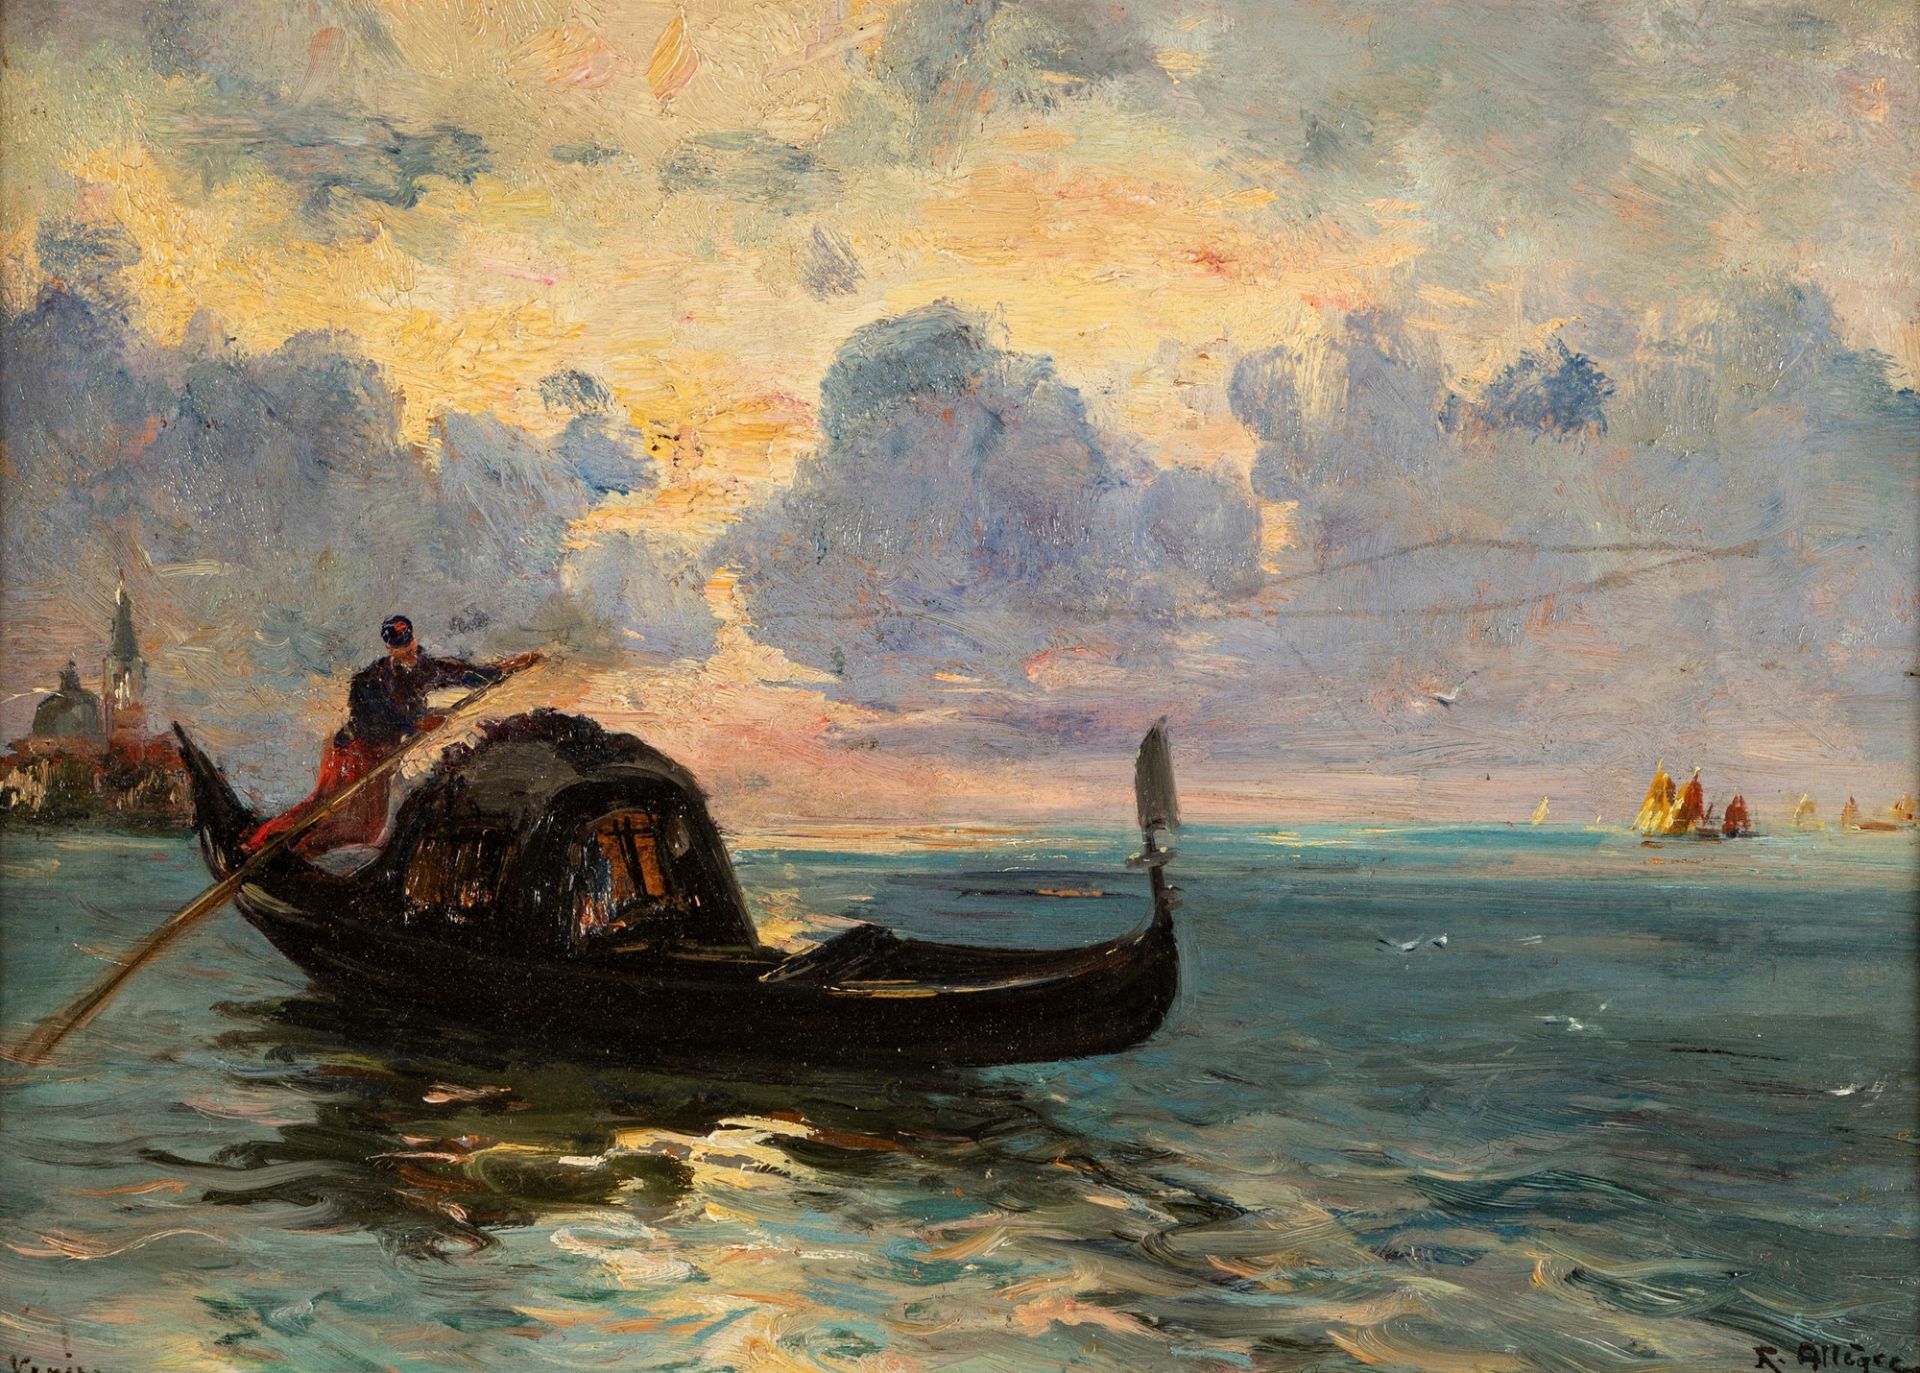 Raymond Allegre (Marsiglia 1857-1933) - Gondola in Venice, 1905